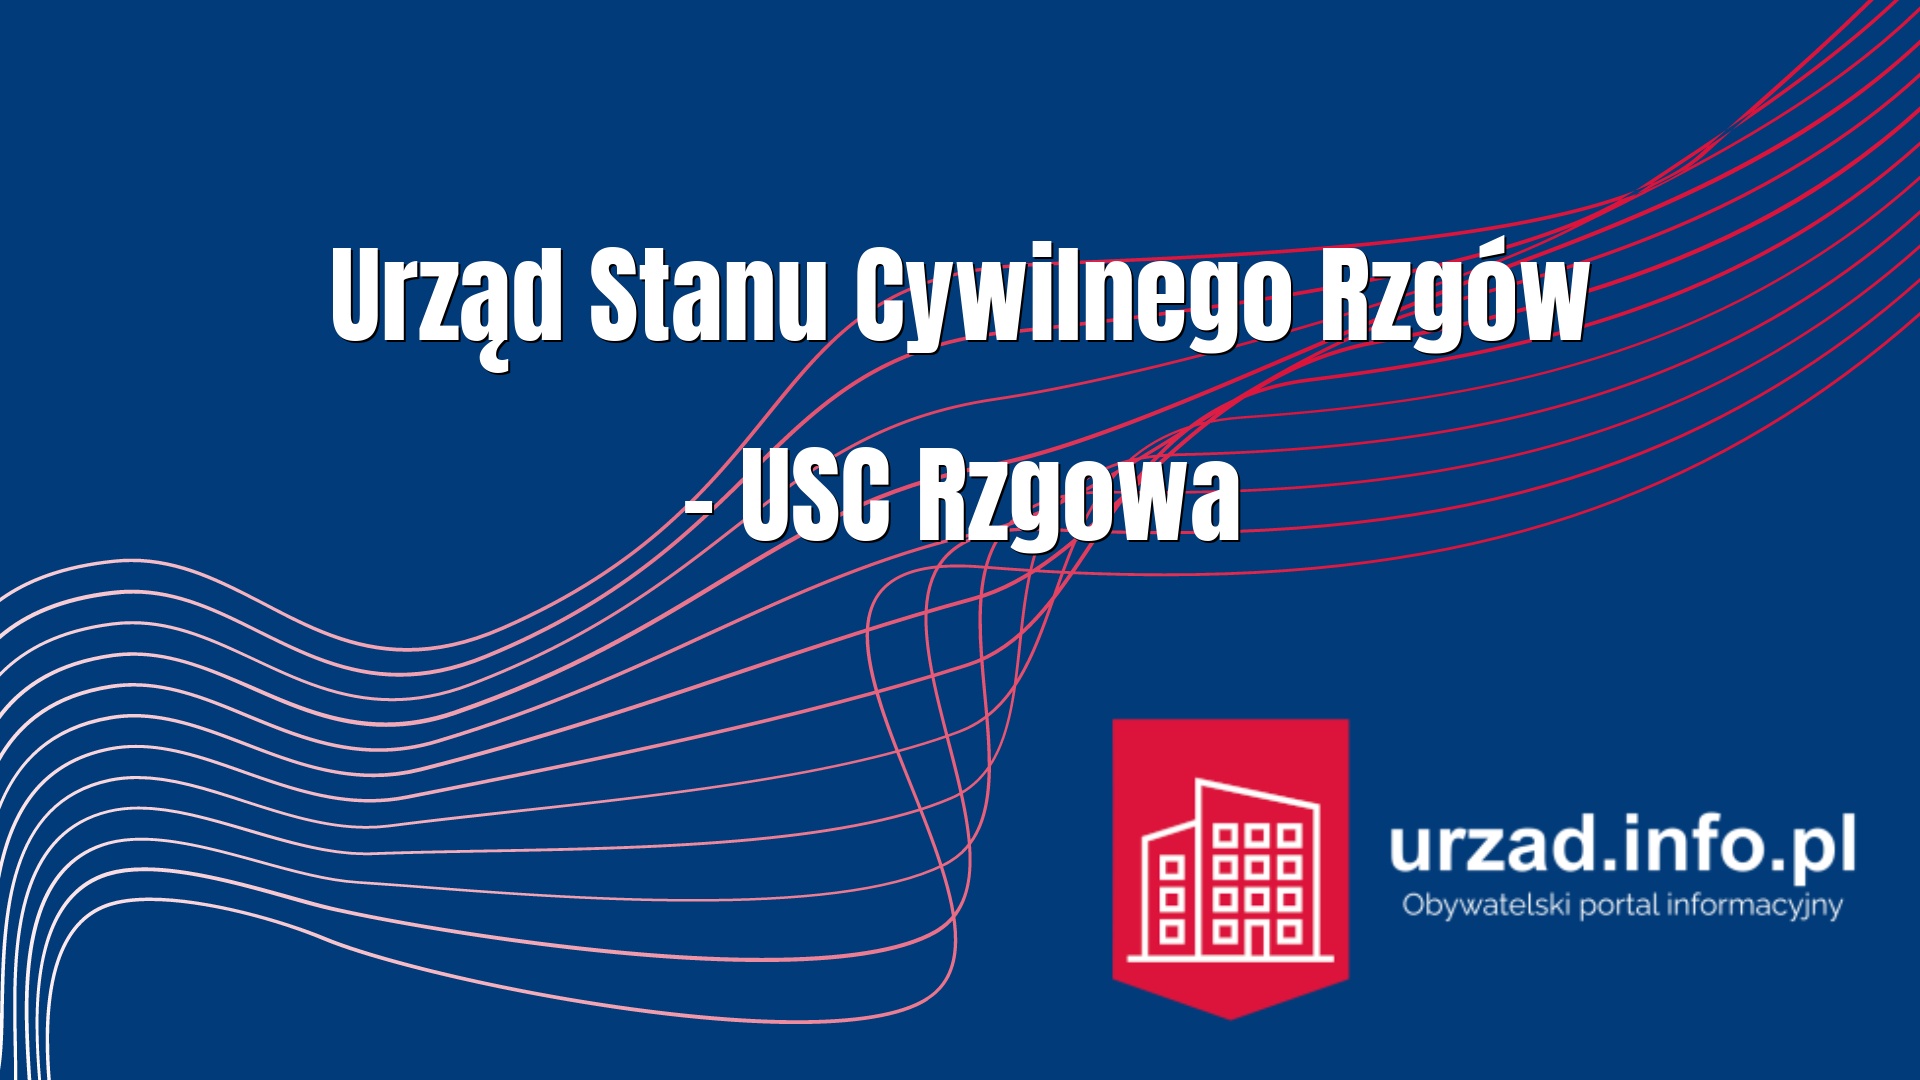 Urząd Stanu Cywilnego Rzgów – USC Rzgowa